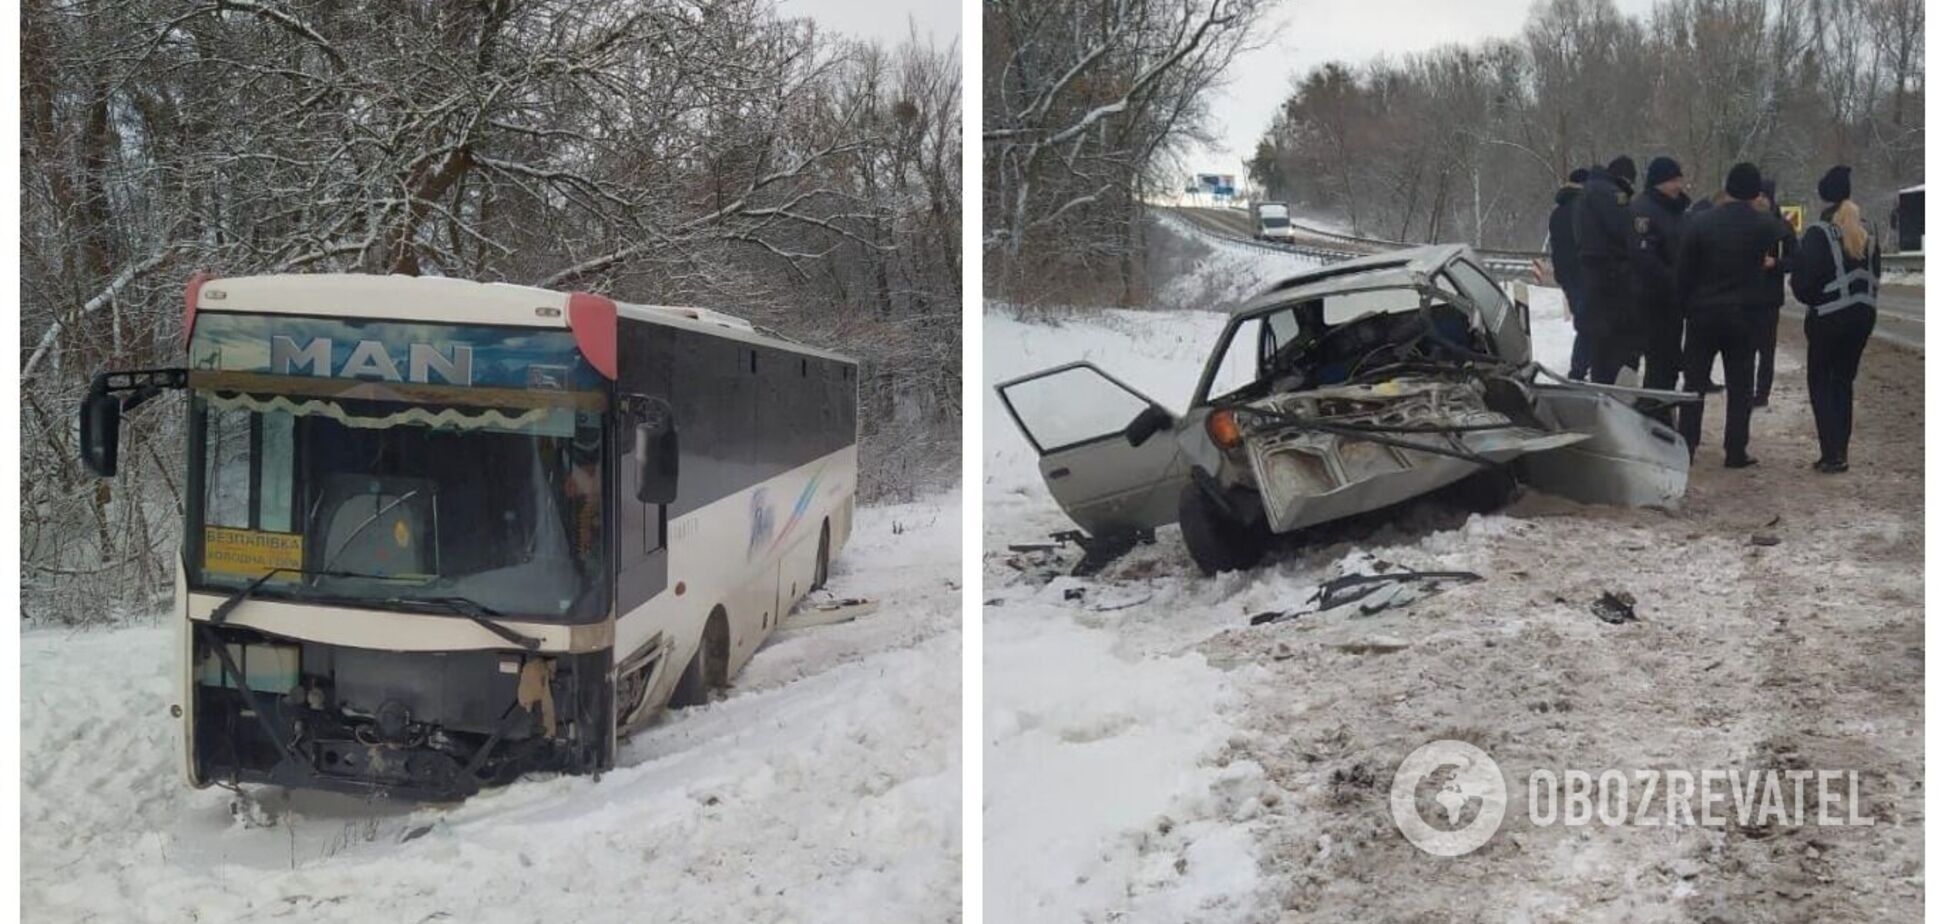 На Харьковщине ЗАЗ столкнулся с автобусом, есть пострадавшие. Видео момента аварии